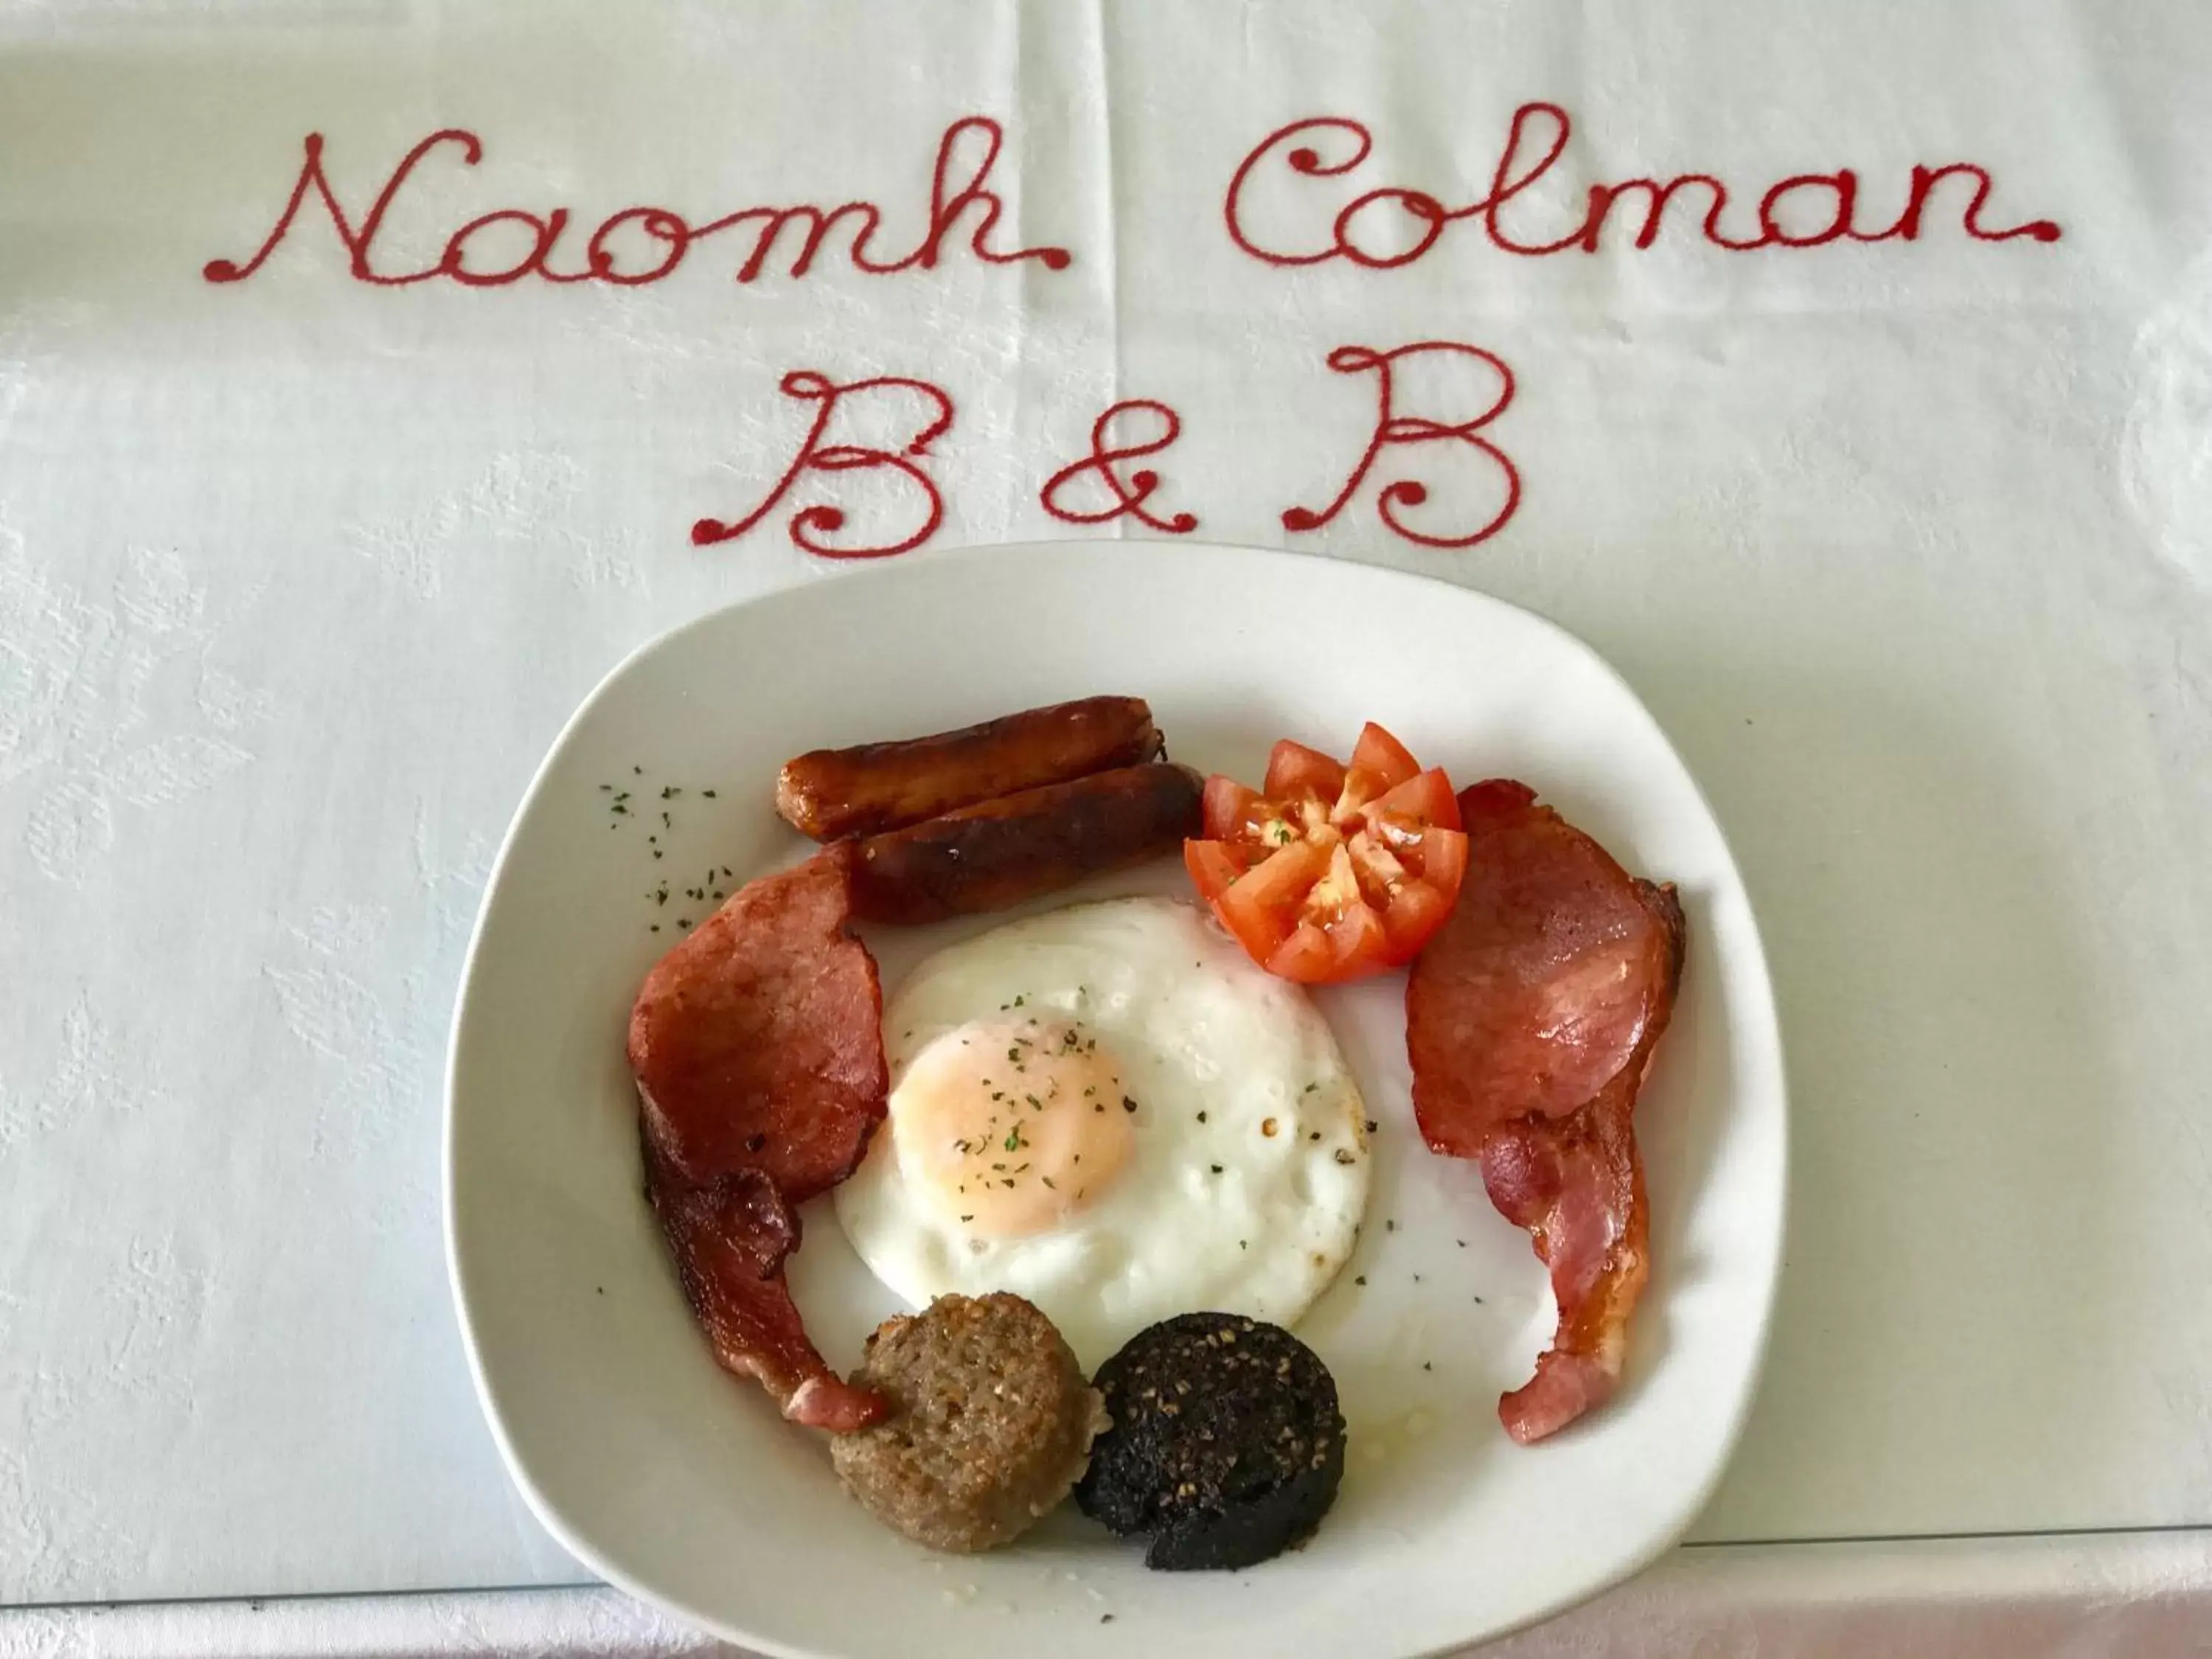 English/Irish breakfast in Naomh Colman B&B